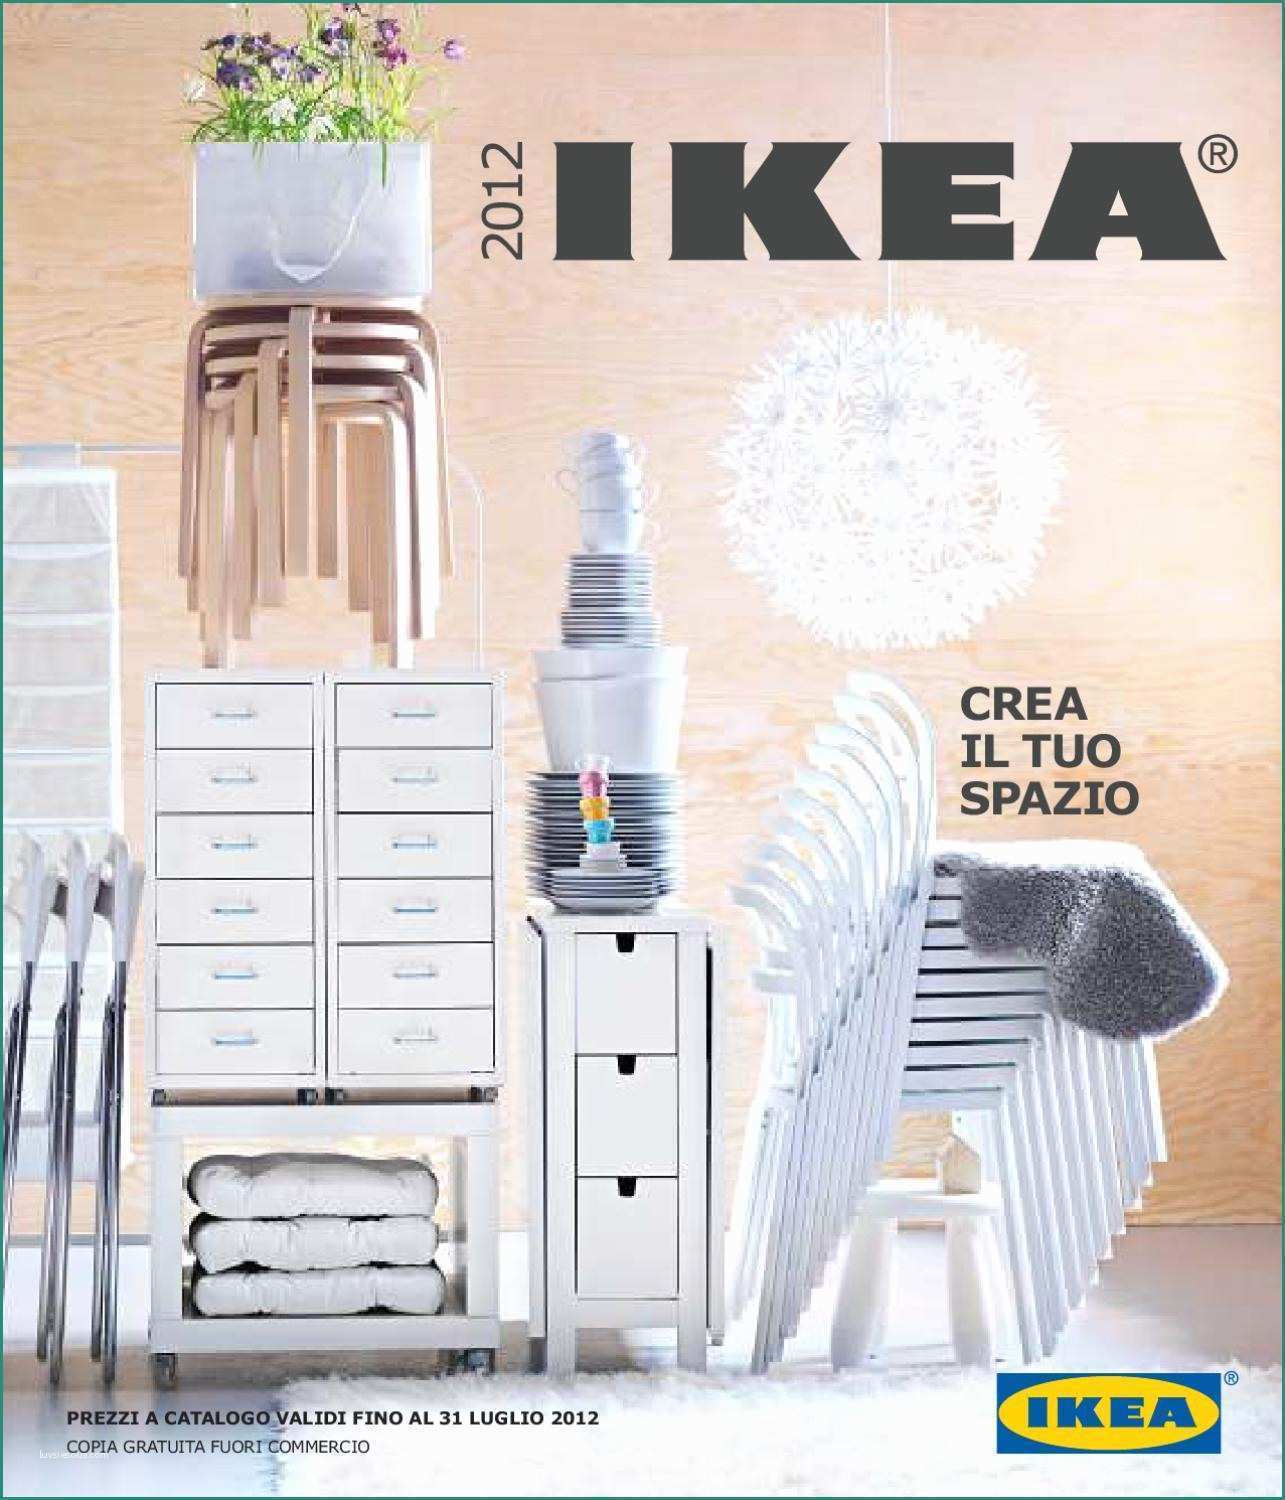 Tende Per Coprire Scaffali E Ikea Catalogo 2012 by Mercializzando toscana issuu